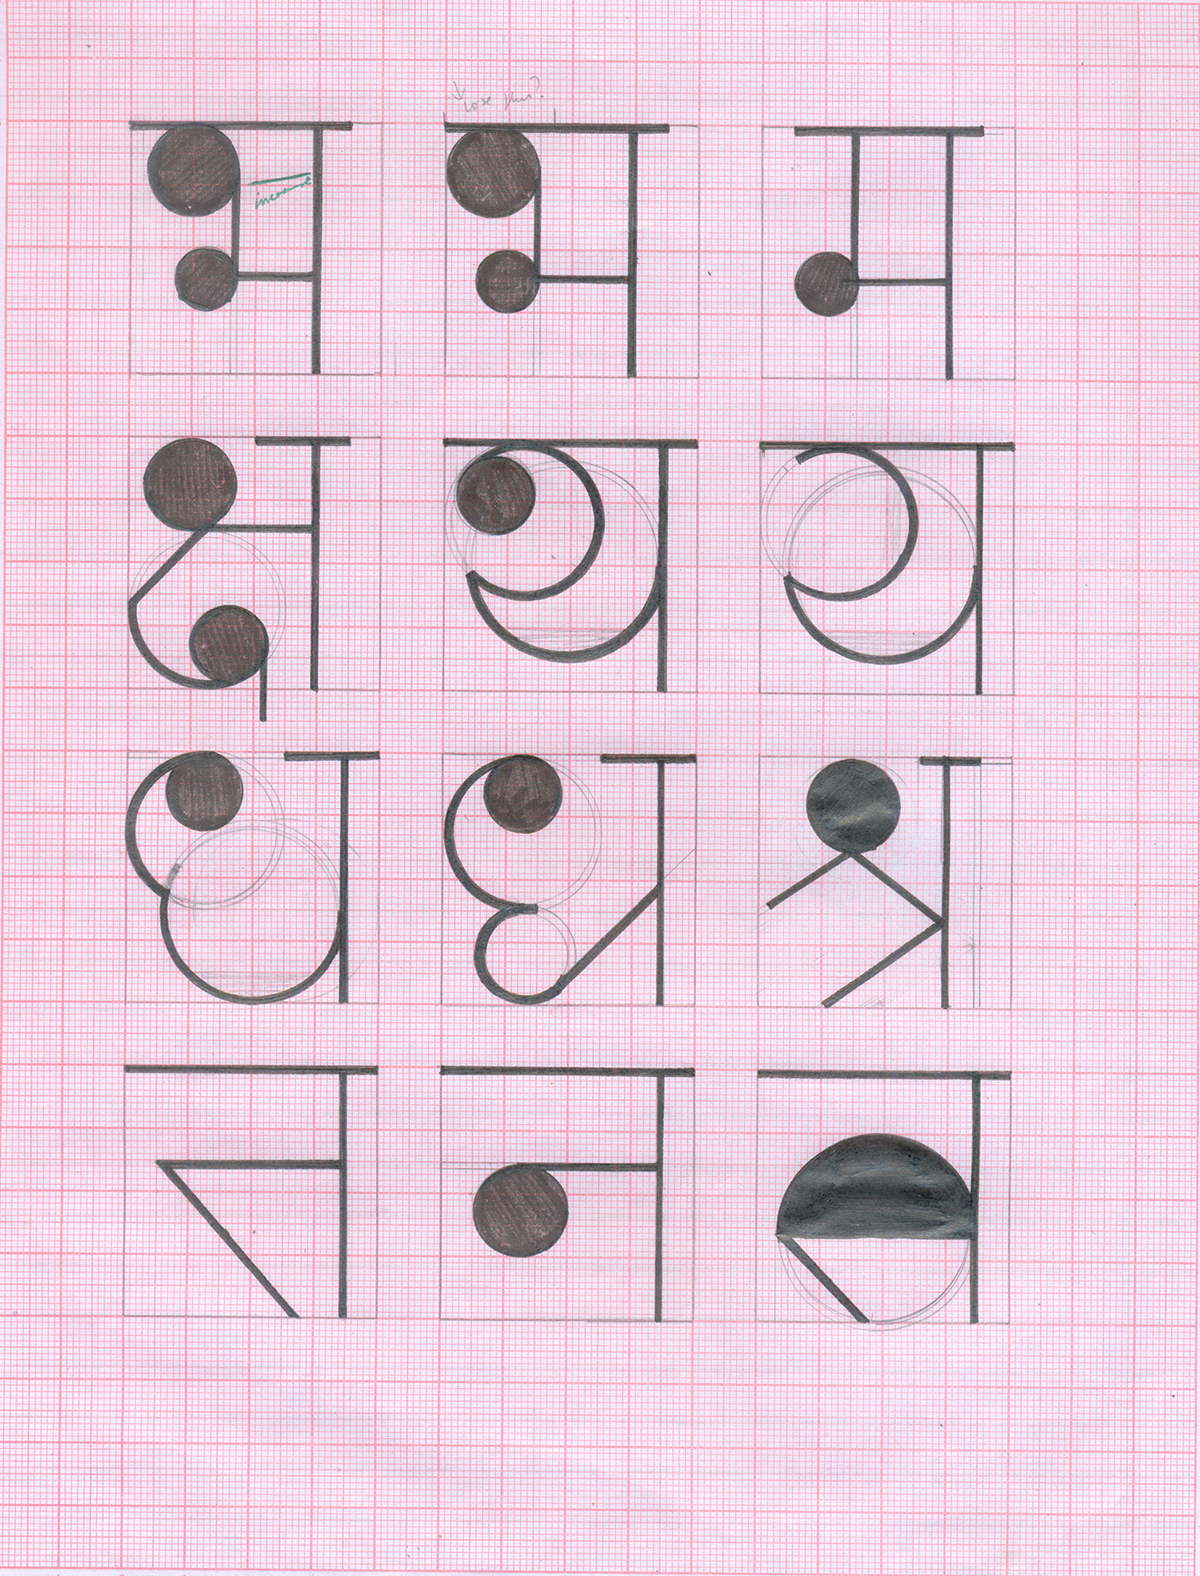 geomarathi Marathi hindi India PUNE font doodlewaala minimalistic devanagiri Maharashtra